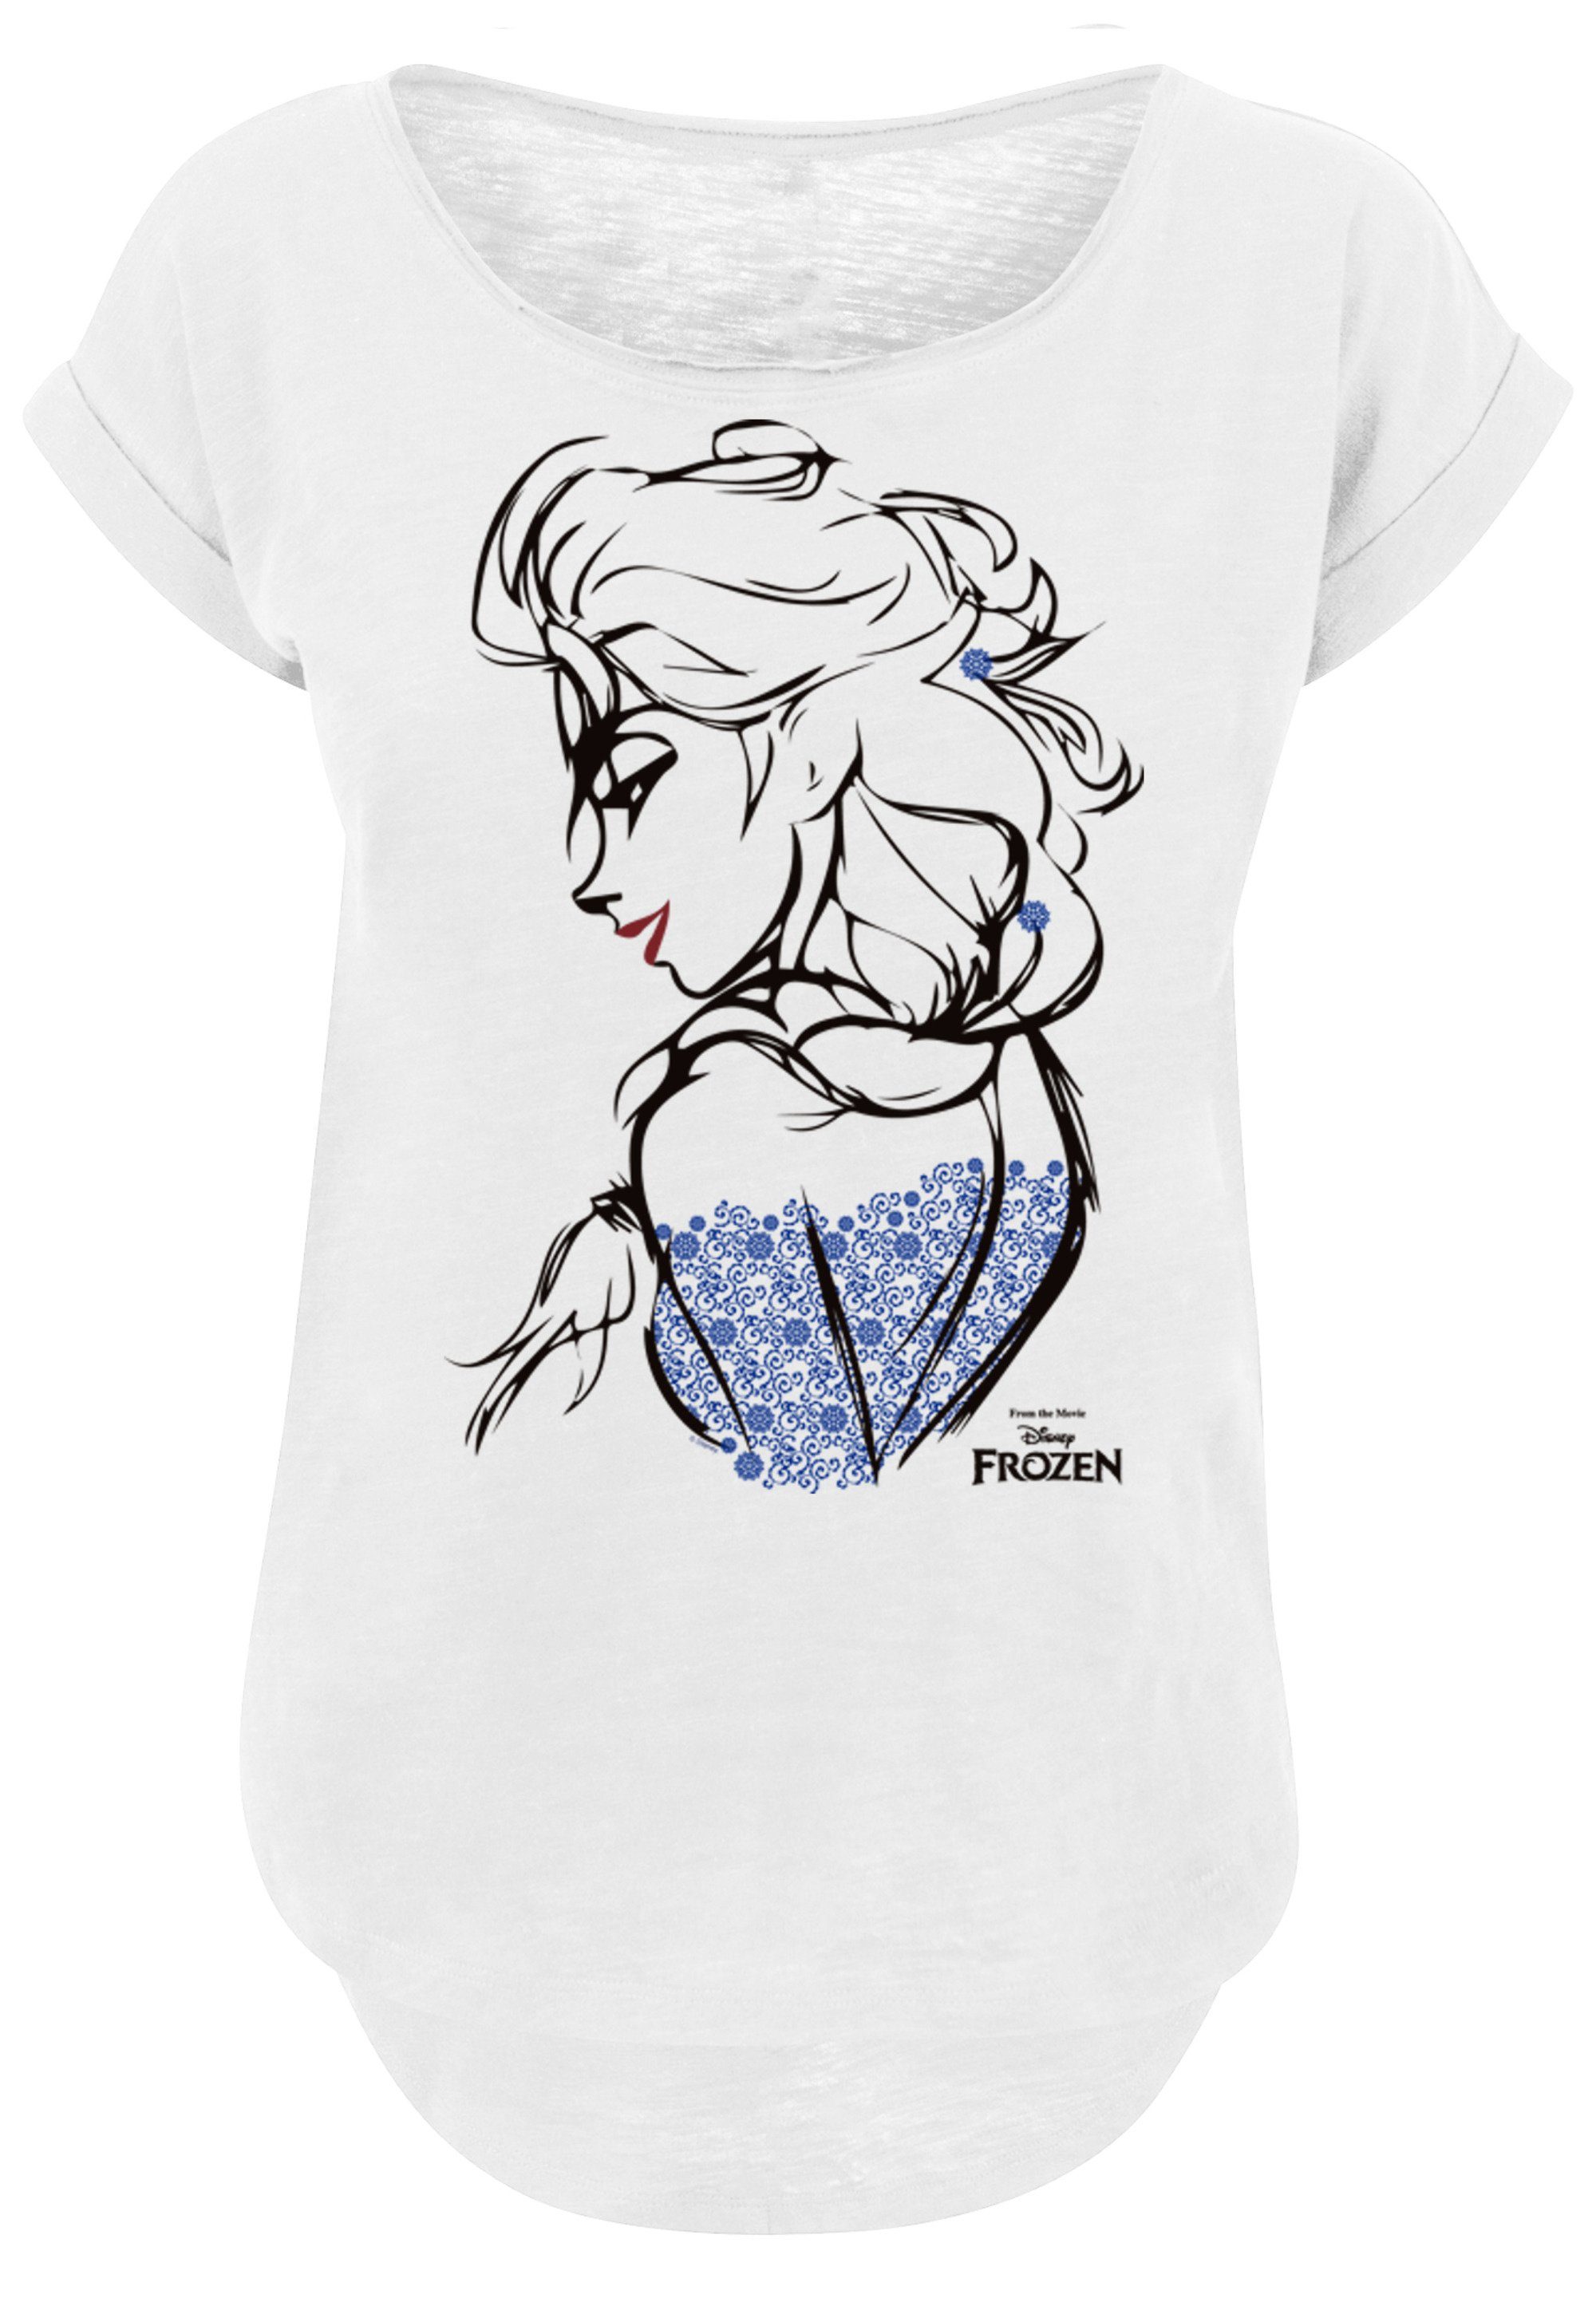 F4NT4STIC T-Shirt Frozen Print Elsa Sketch Mono